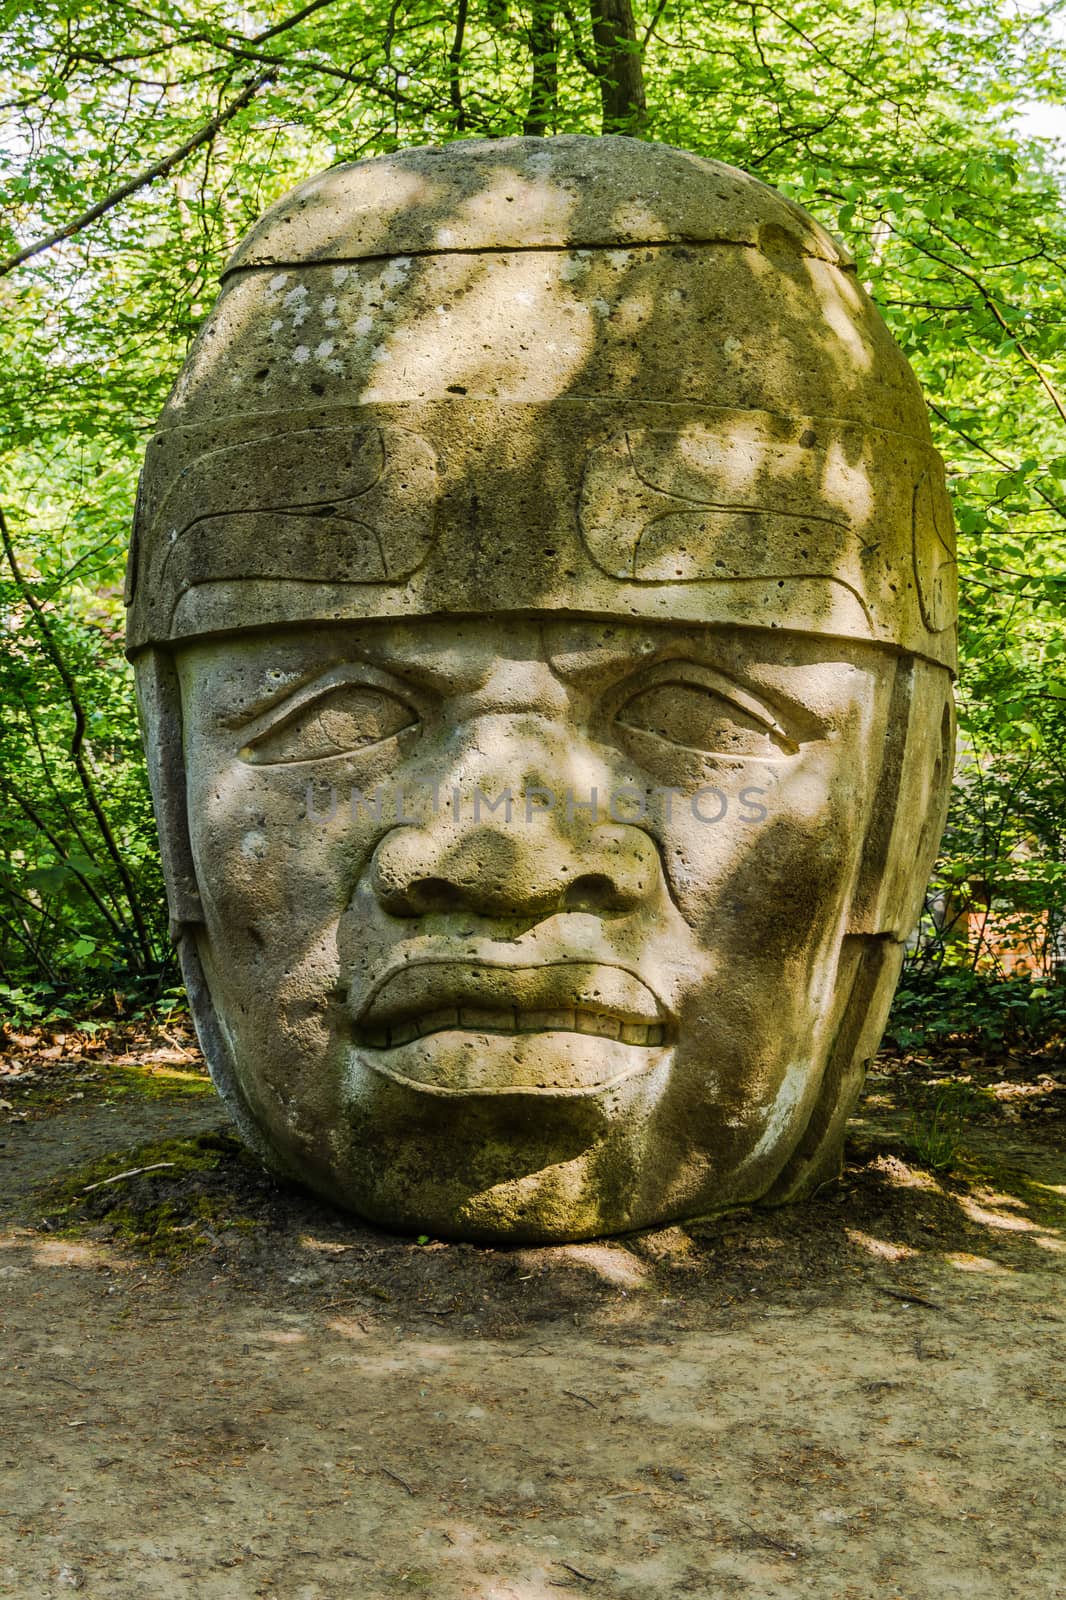 Replica of Olmec Head No 8 by pawel_szczepanski